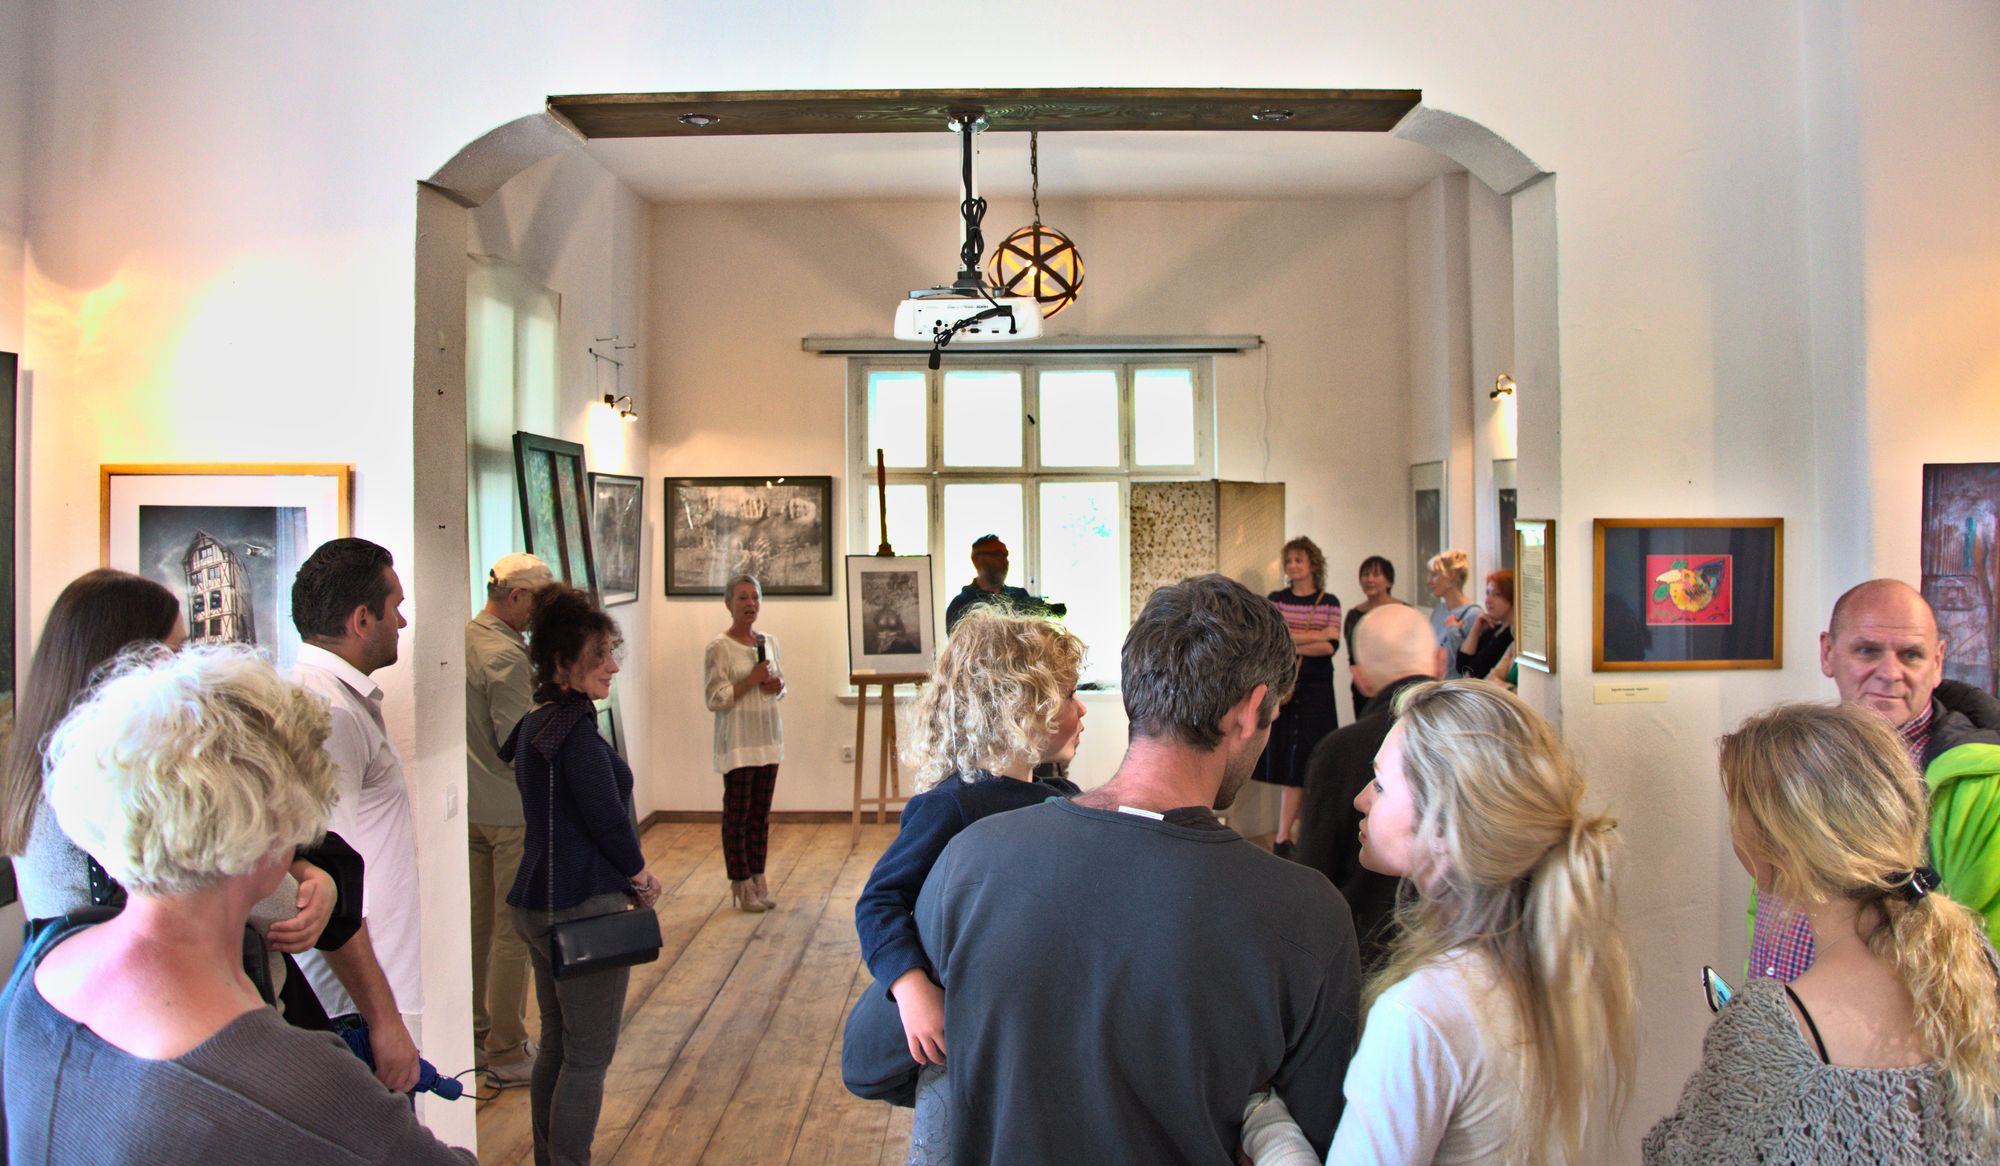 Widzowie w galerii oglądają wystawę obrazów rozwieszonych na ścianach Sudeckiego Centrum Kultury i Sztuki